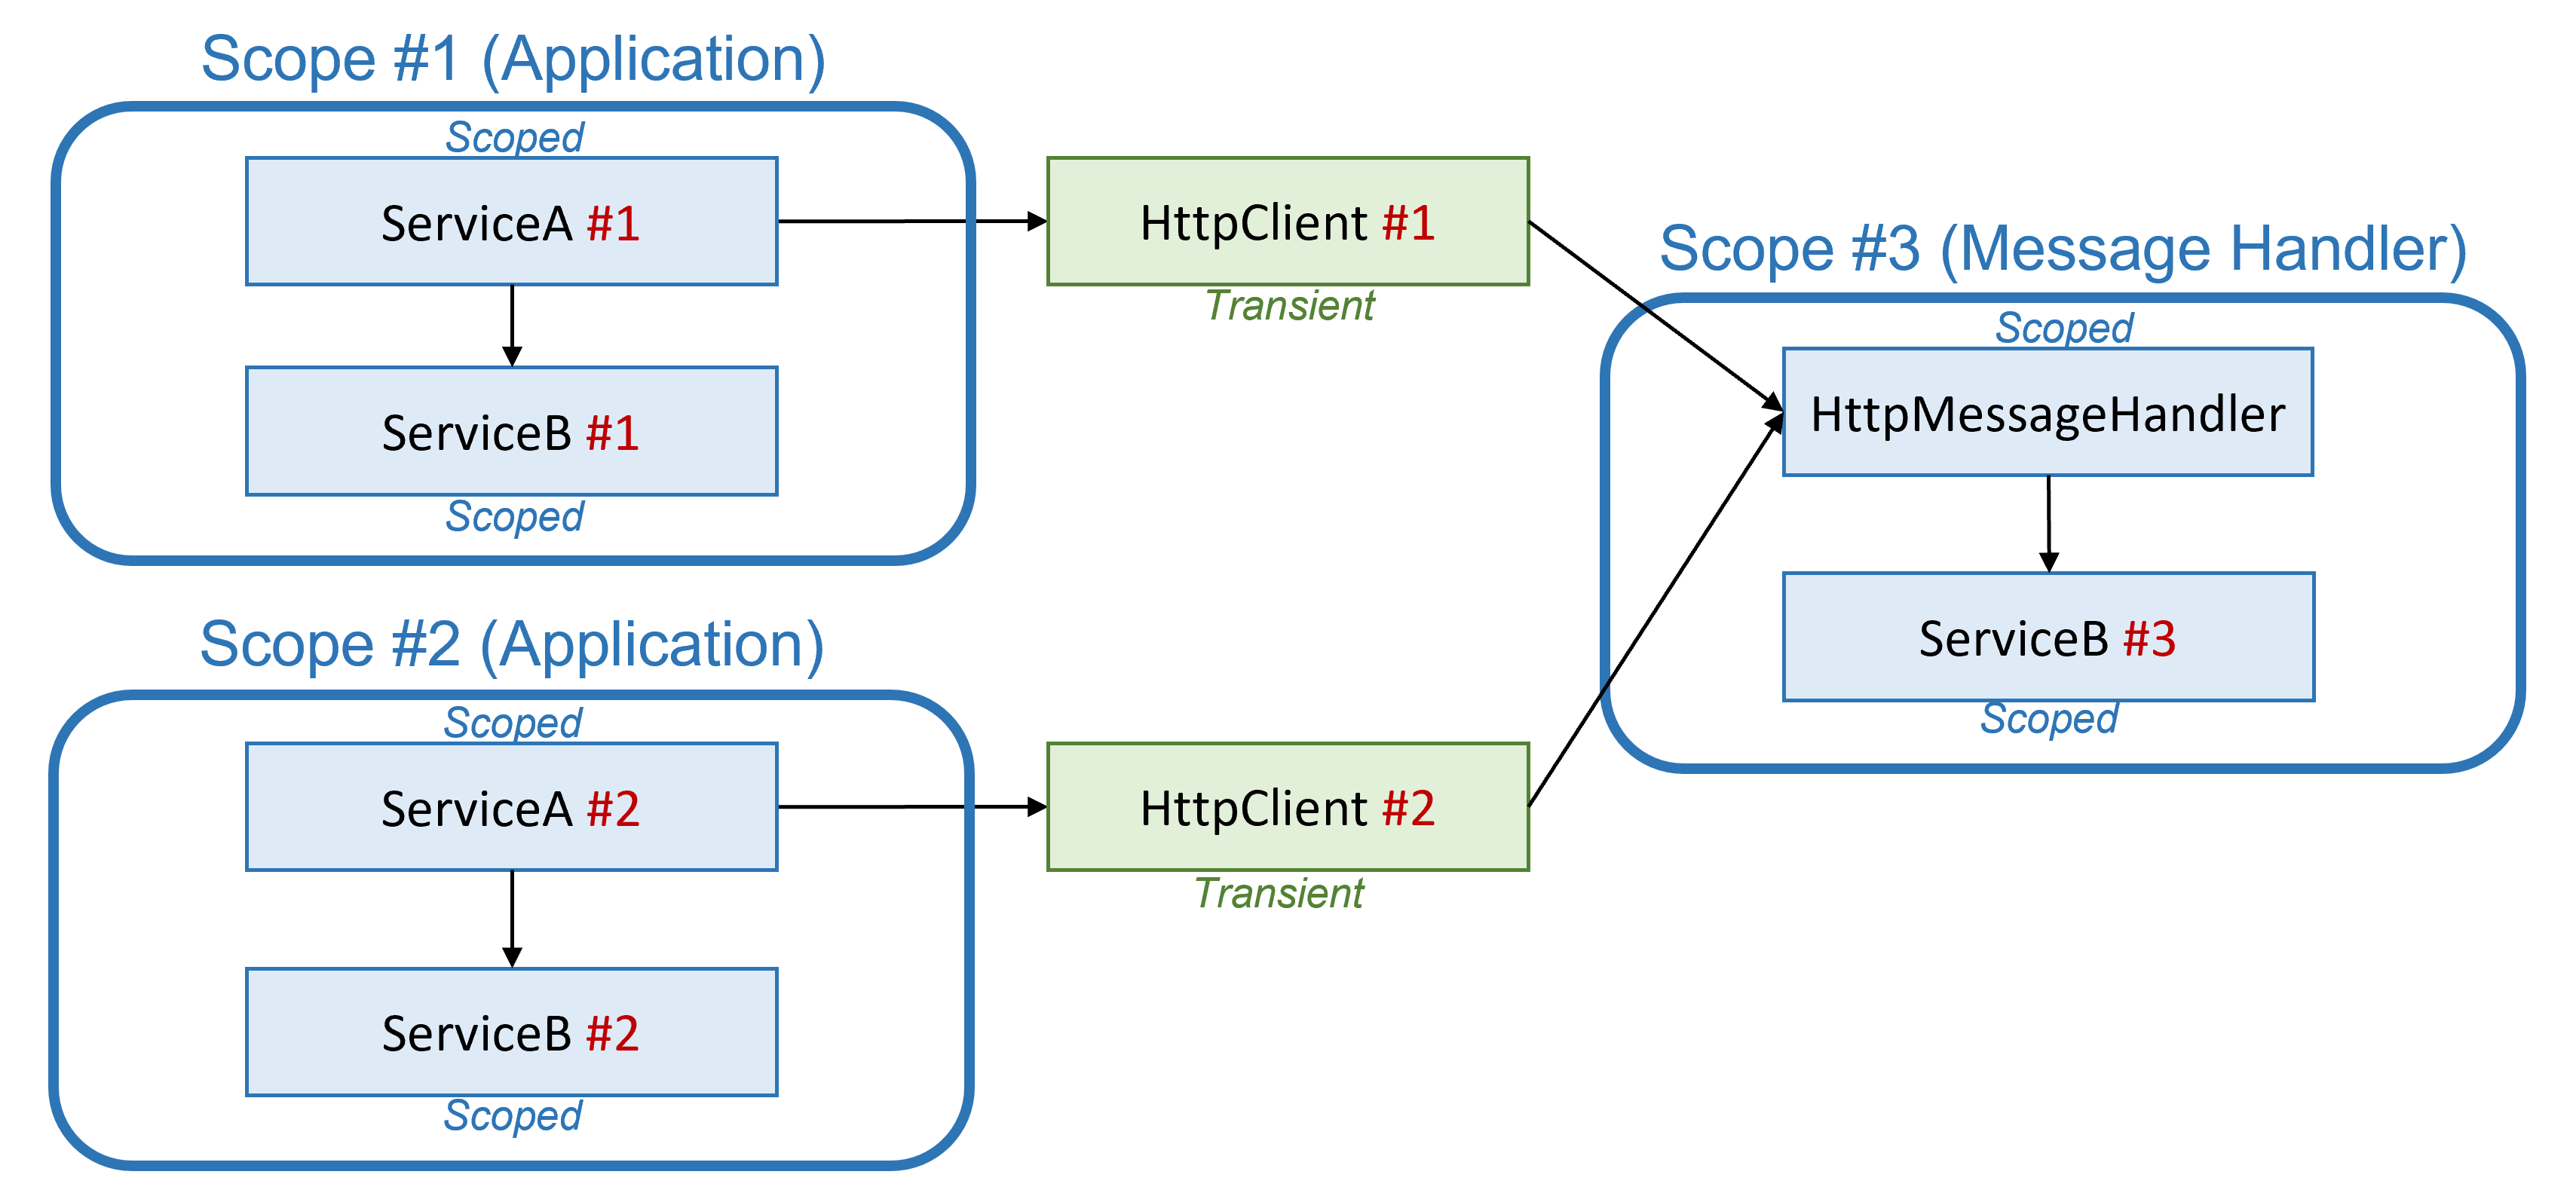 Diagrama que muestra dos ámbitos de inserción de dependencias de aplicación y un ámbito de controlador de mensajes aparte